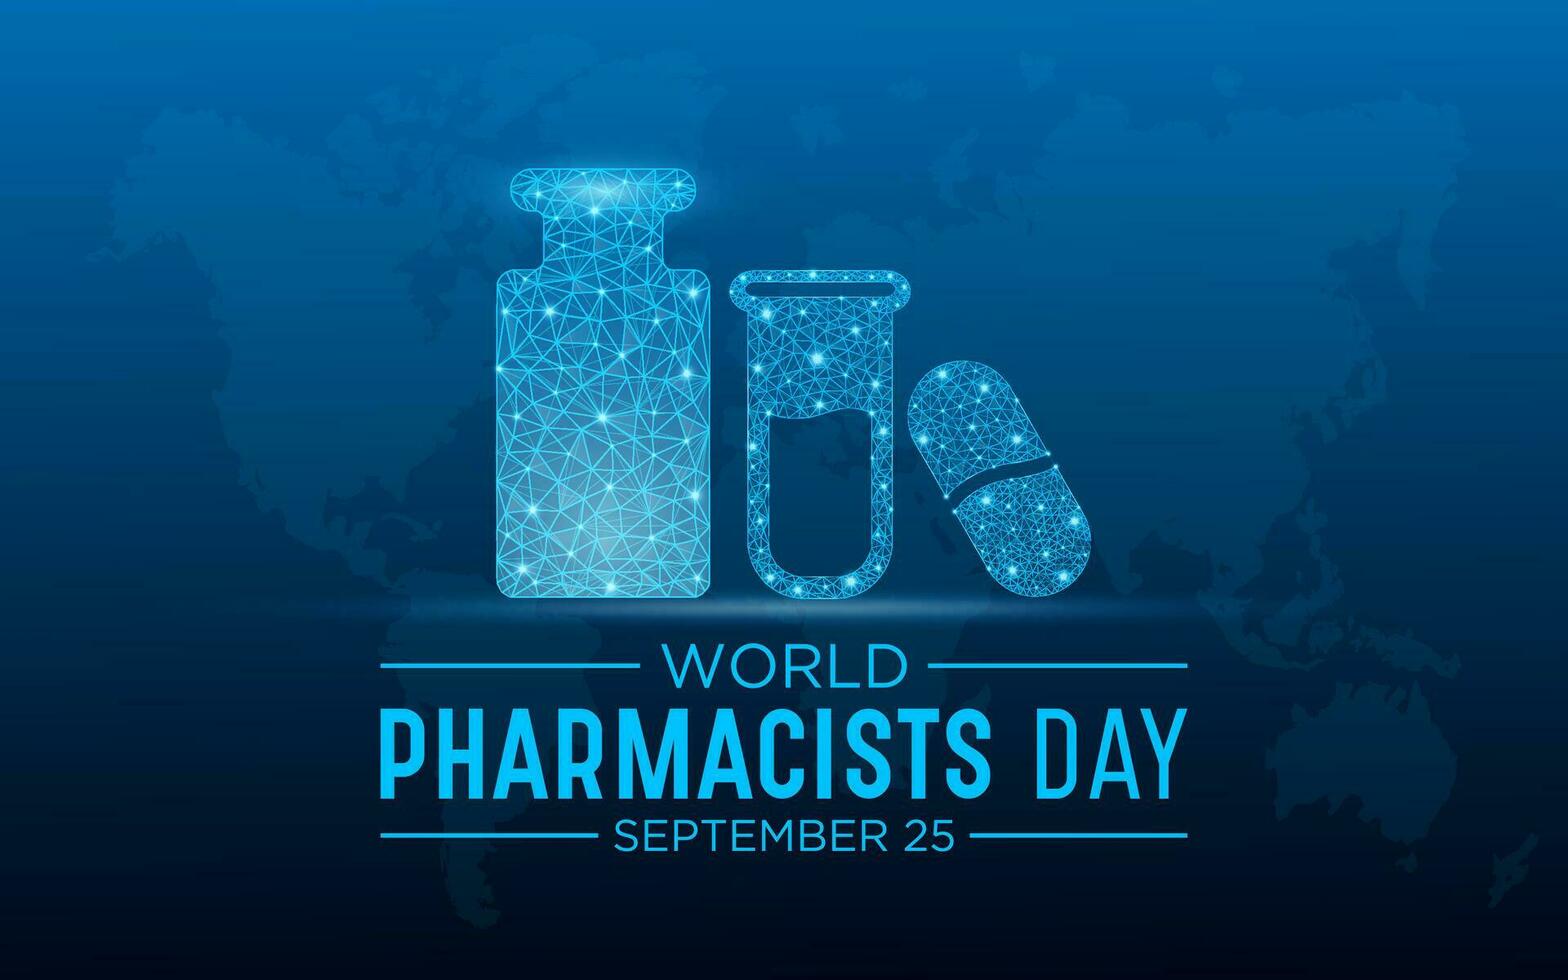 mundo farmacêuticos dia em setembro 25 é uma celebração do cada farmacêutico, farmacêutico cientista. baixo poli estilo Projeto. geométrico fundo. isolado vetor ilustração.